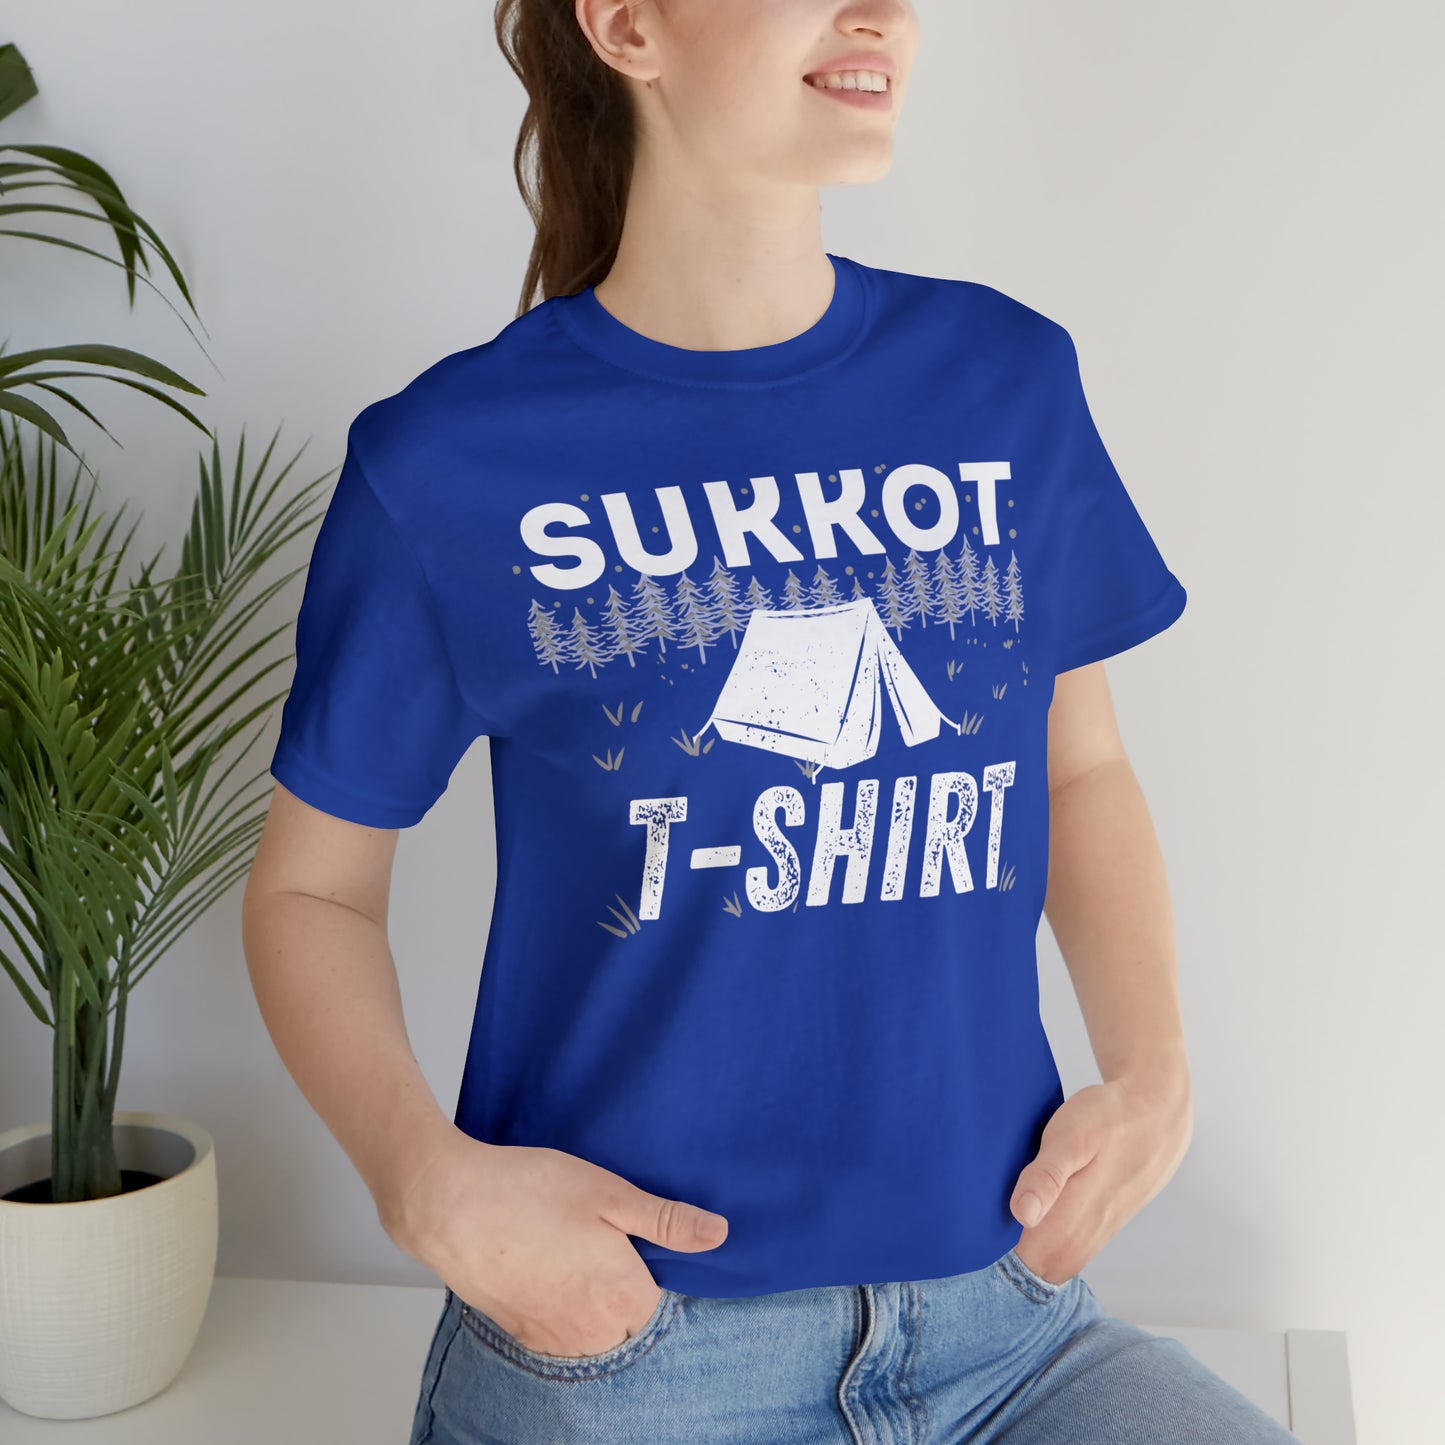 Sukkot T-shirt (Green Pastures Apparel)